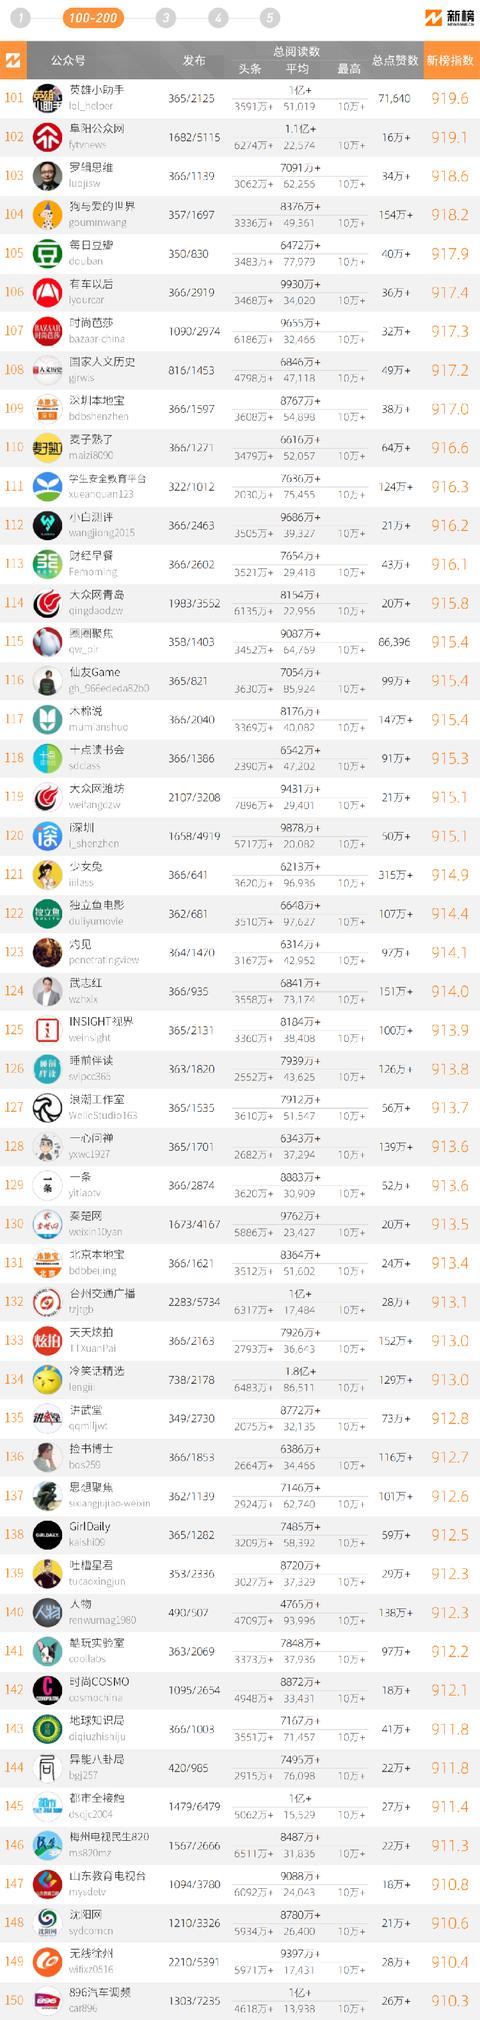 2020年中国微信500强榜单公布 大众网淄博位列全国154名-3.jpg